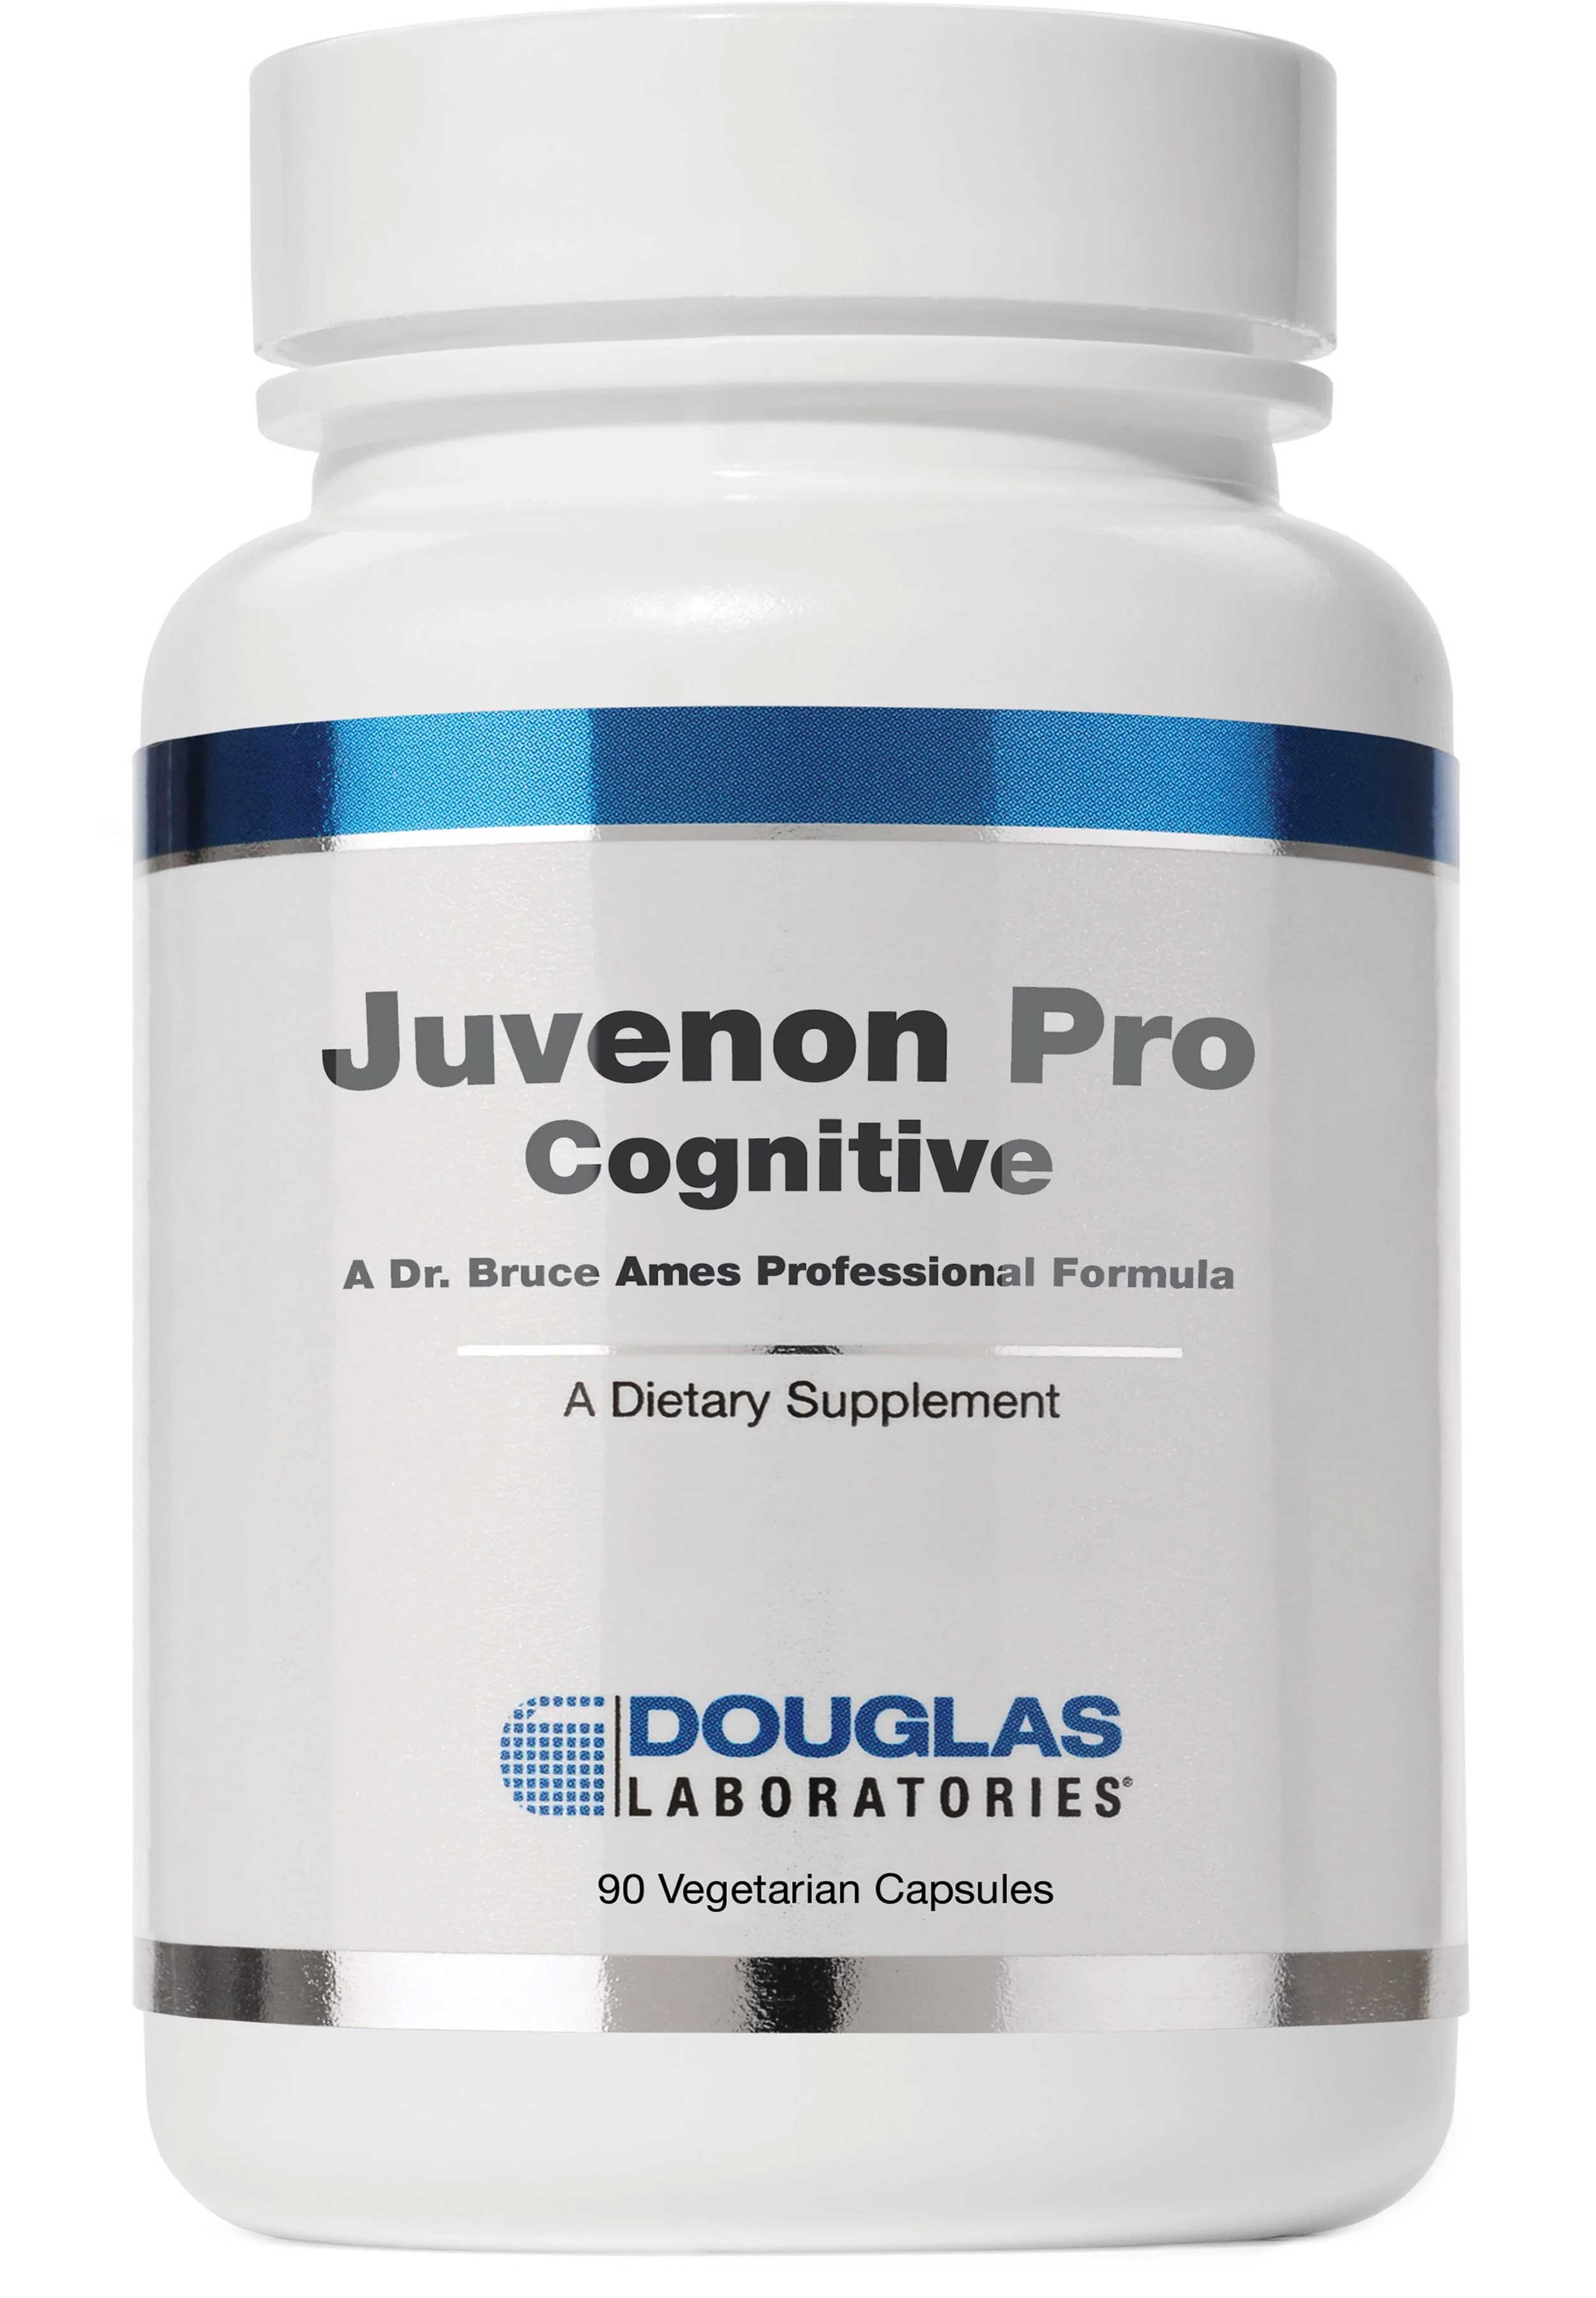 Douglas Laboratories Juvenon Pro Cognitive